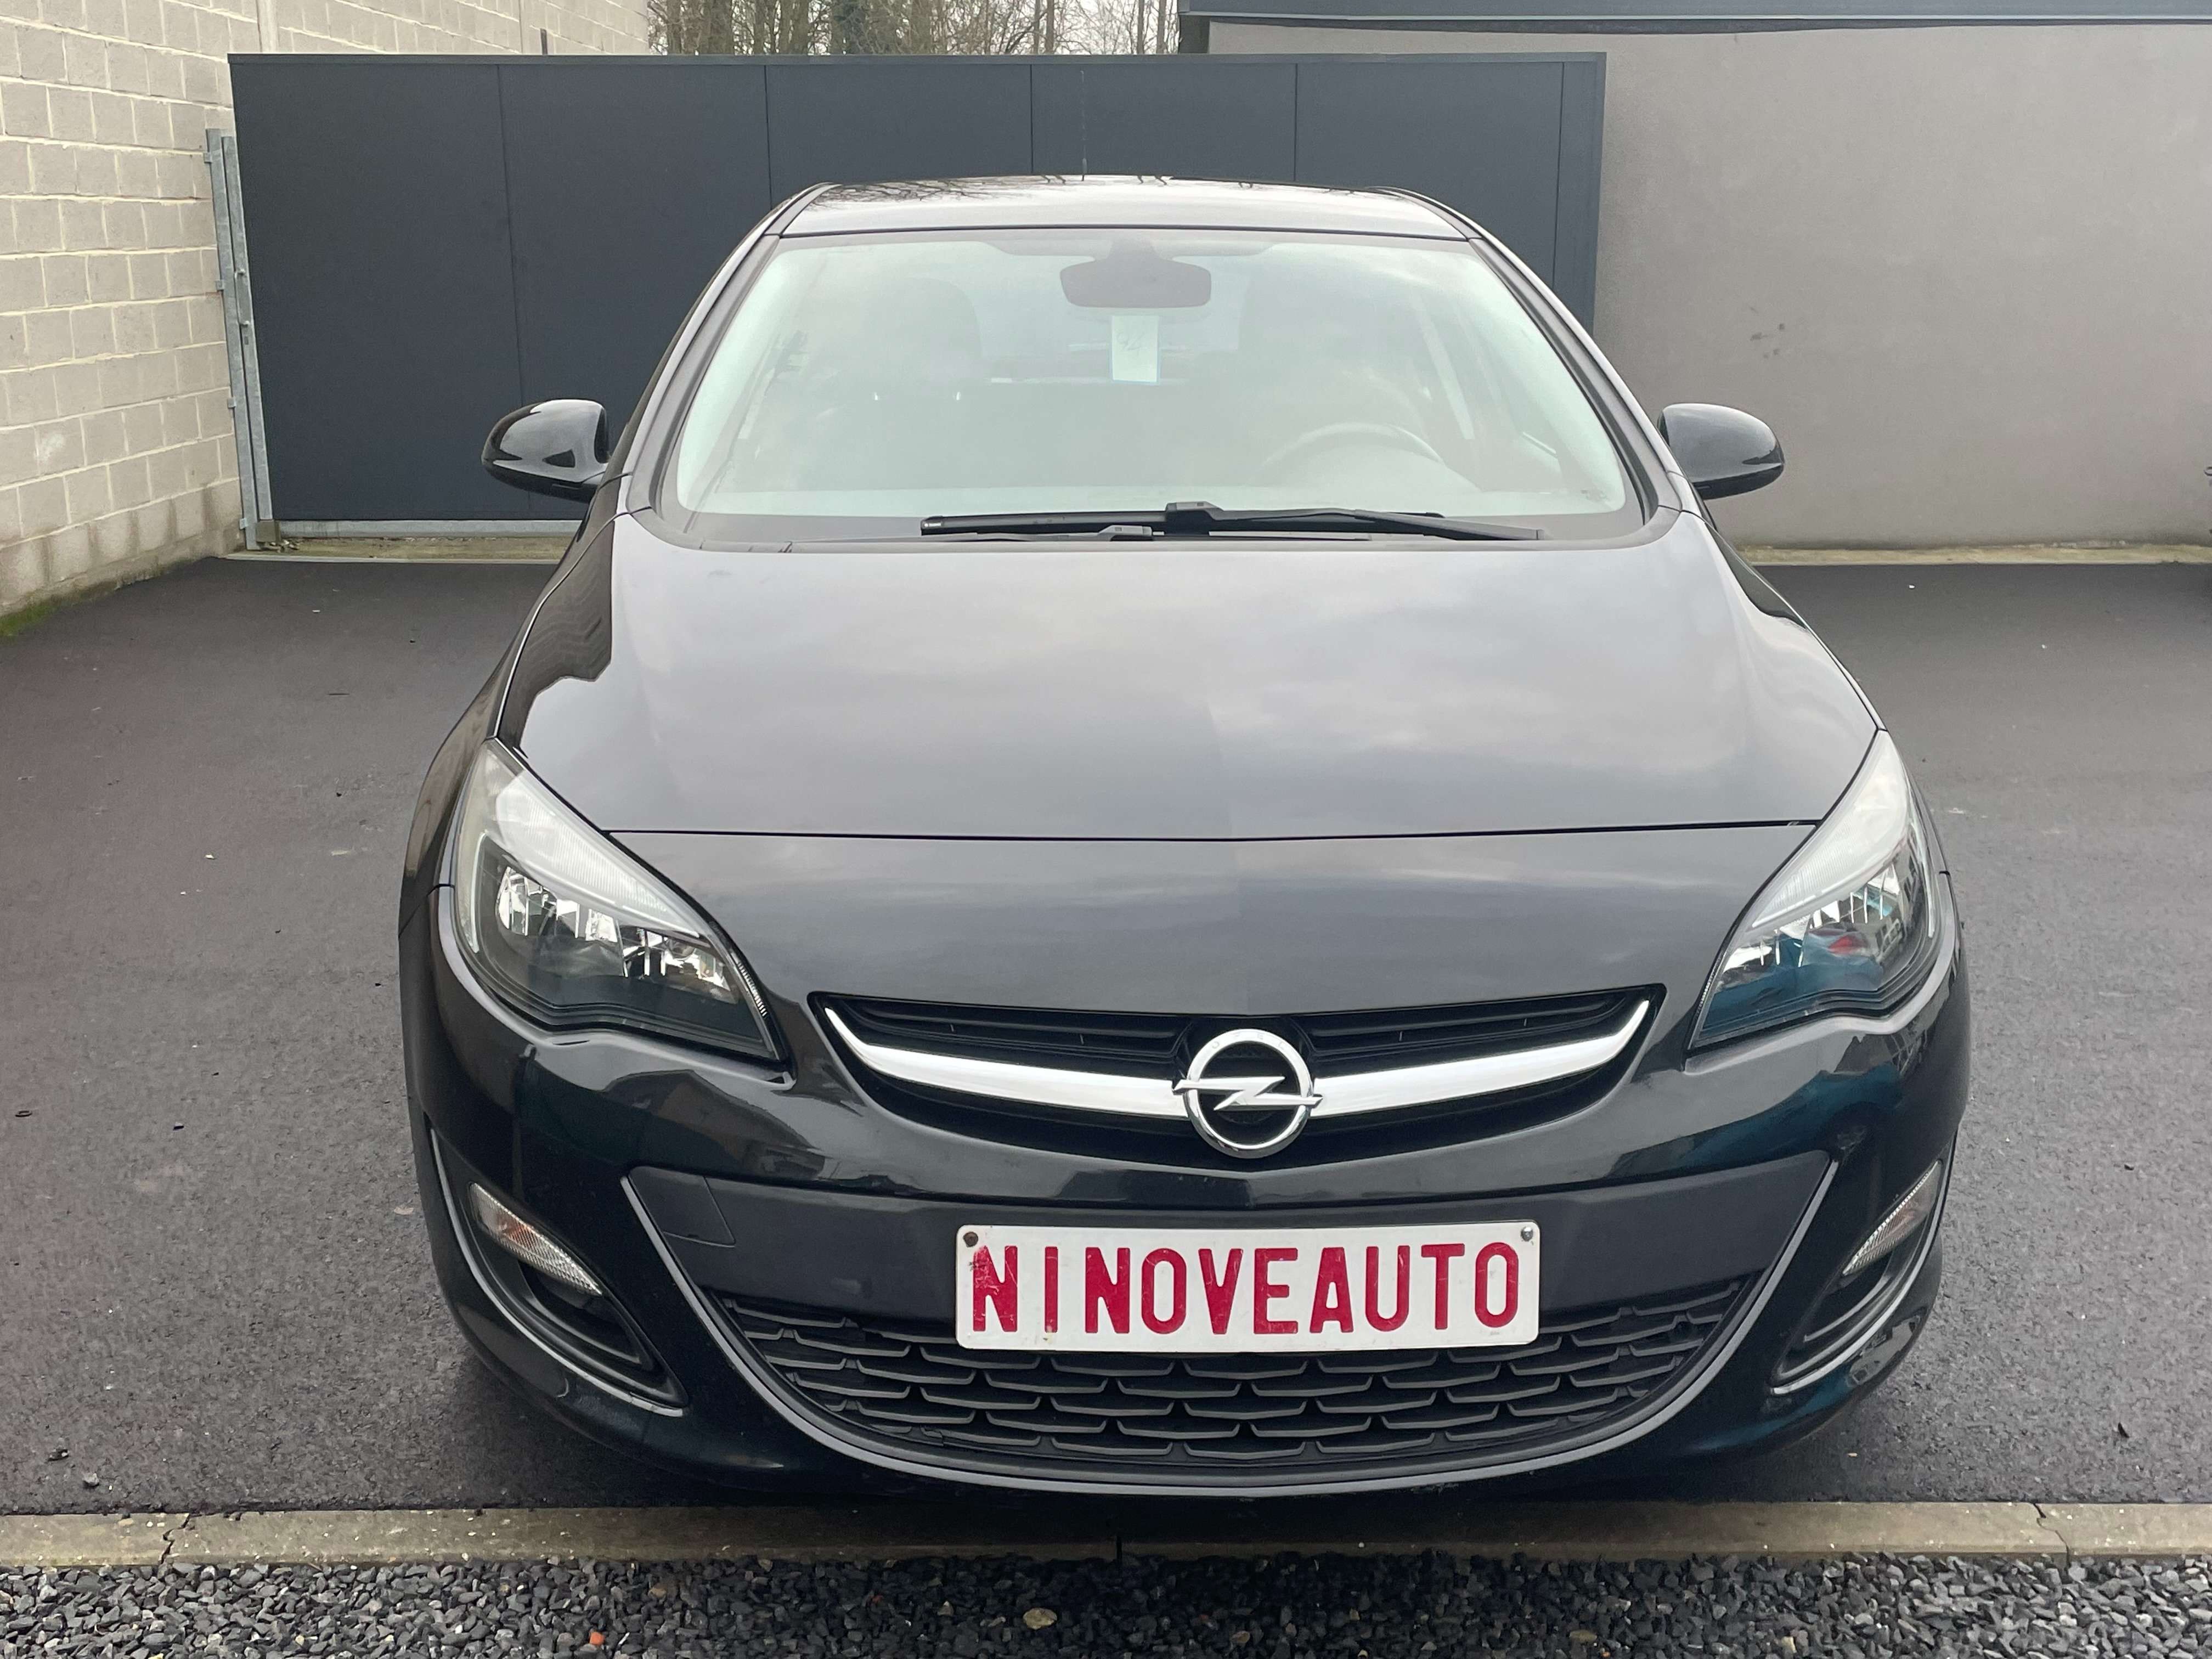 Ninove auto - Opel Astra